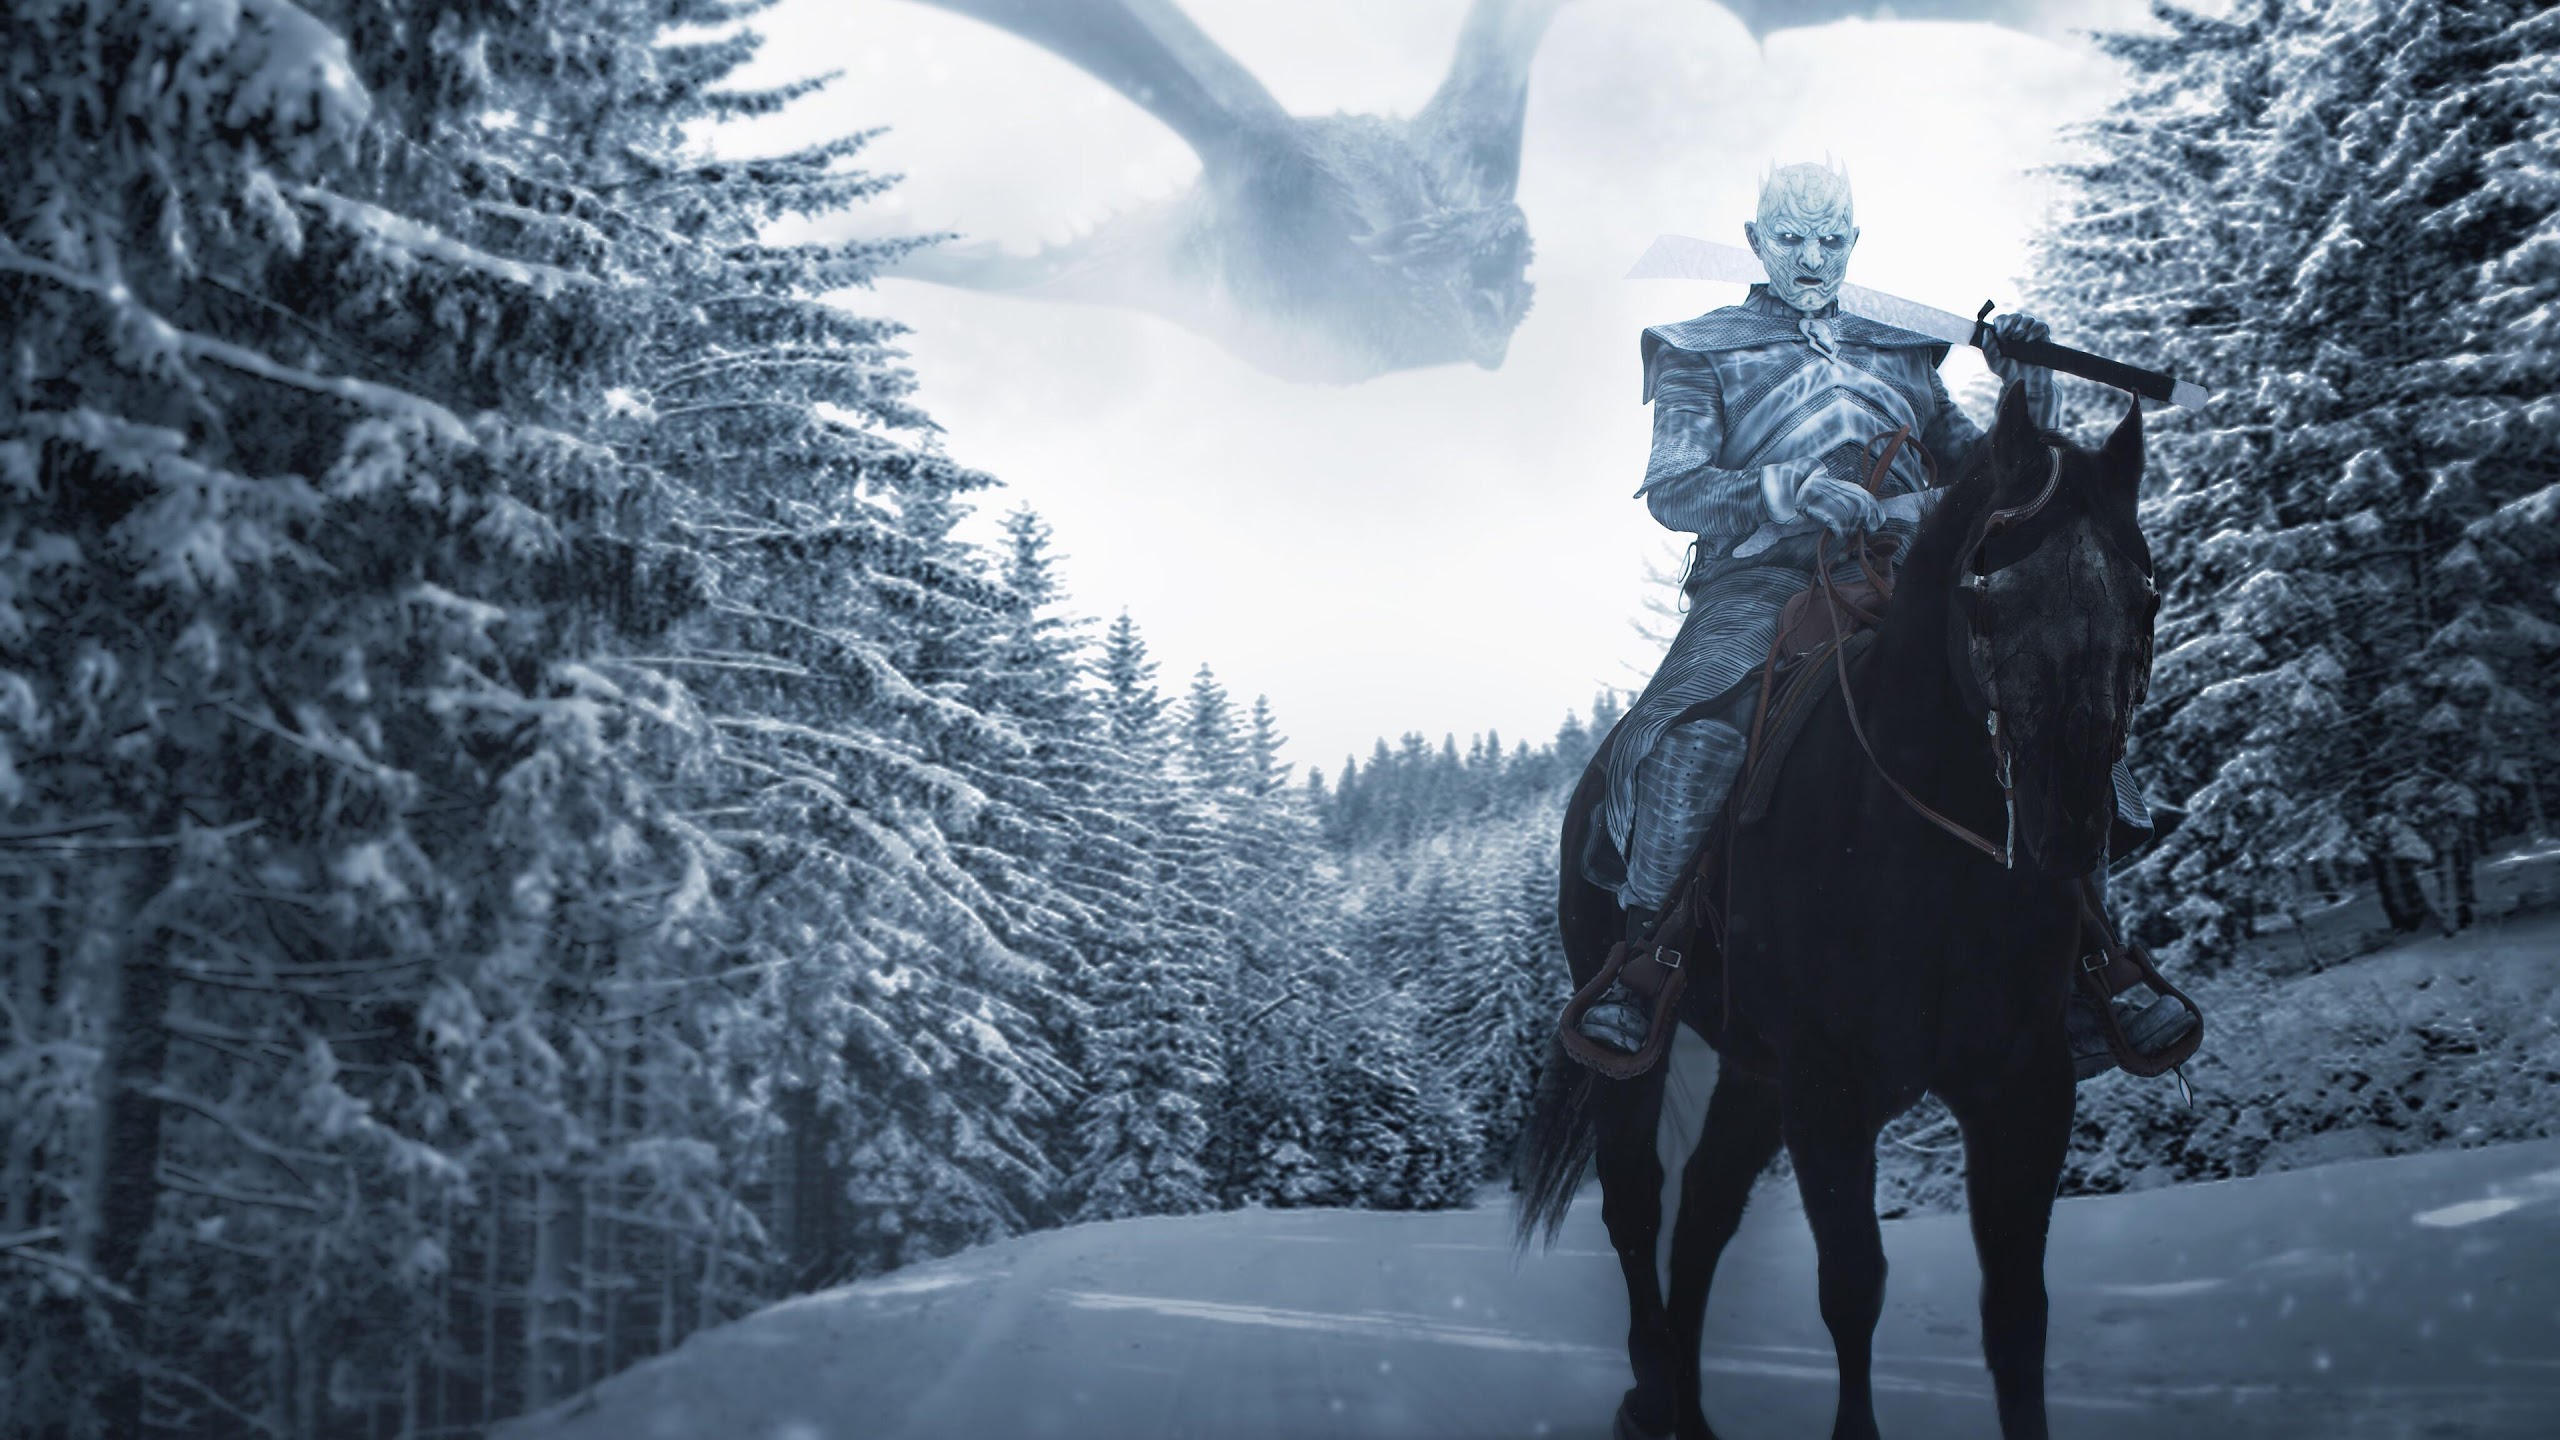 jeu de trônes fond d'écran hd,cheval,ciel,hiver,arbre,neige